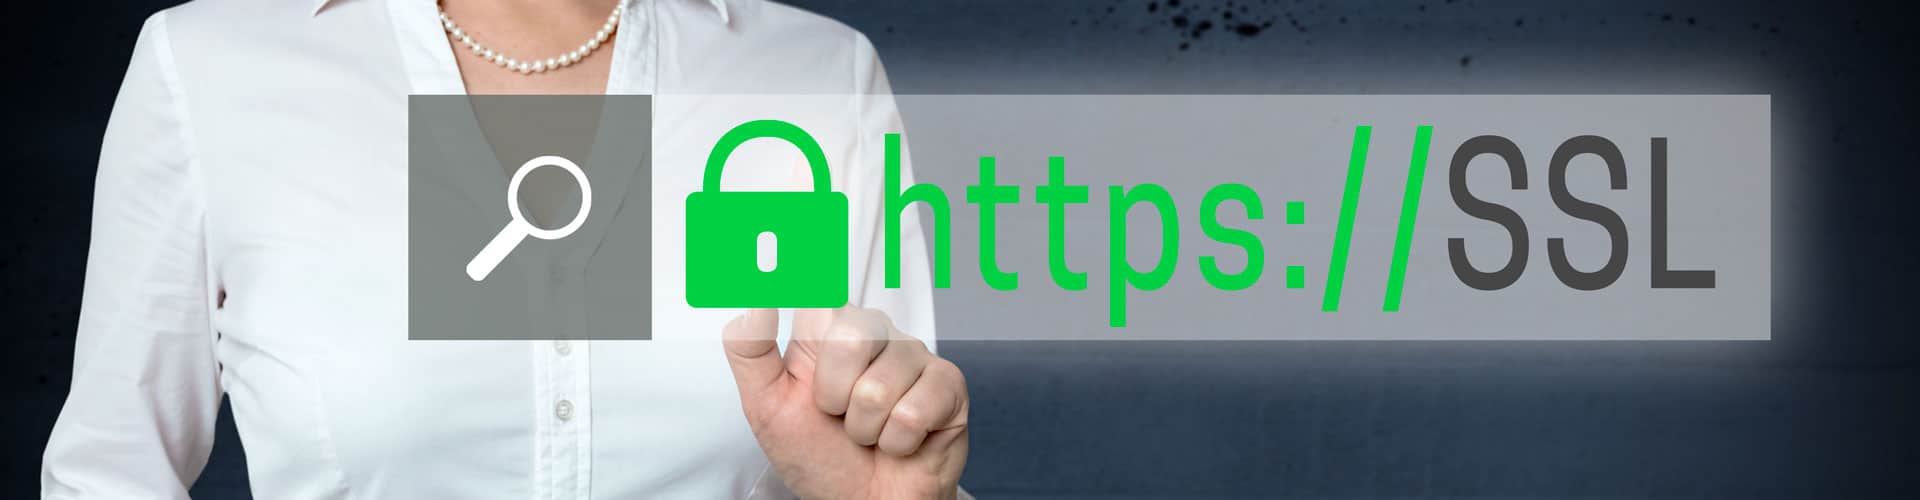 Pourquoi installer un certificat de sécurité SSL sur un site web ?